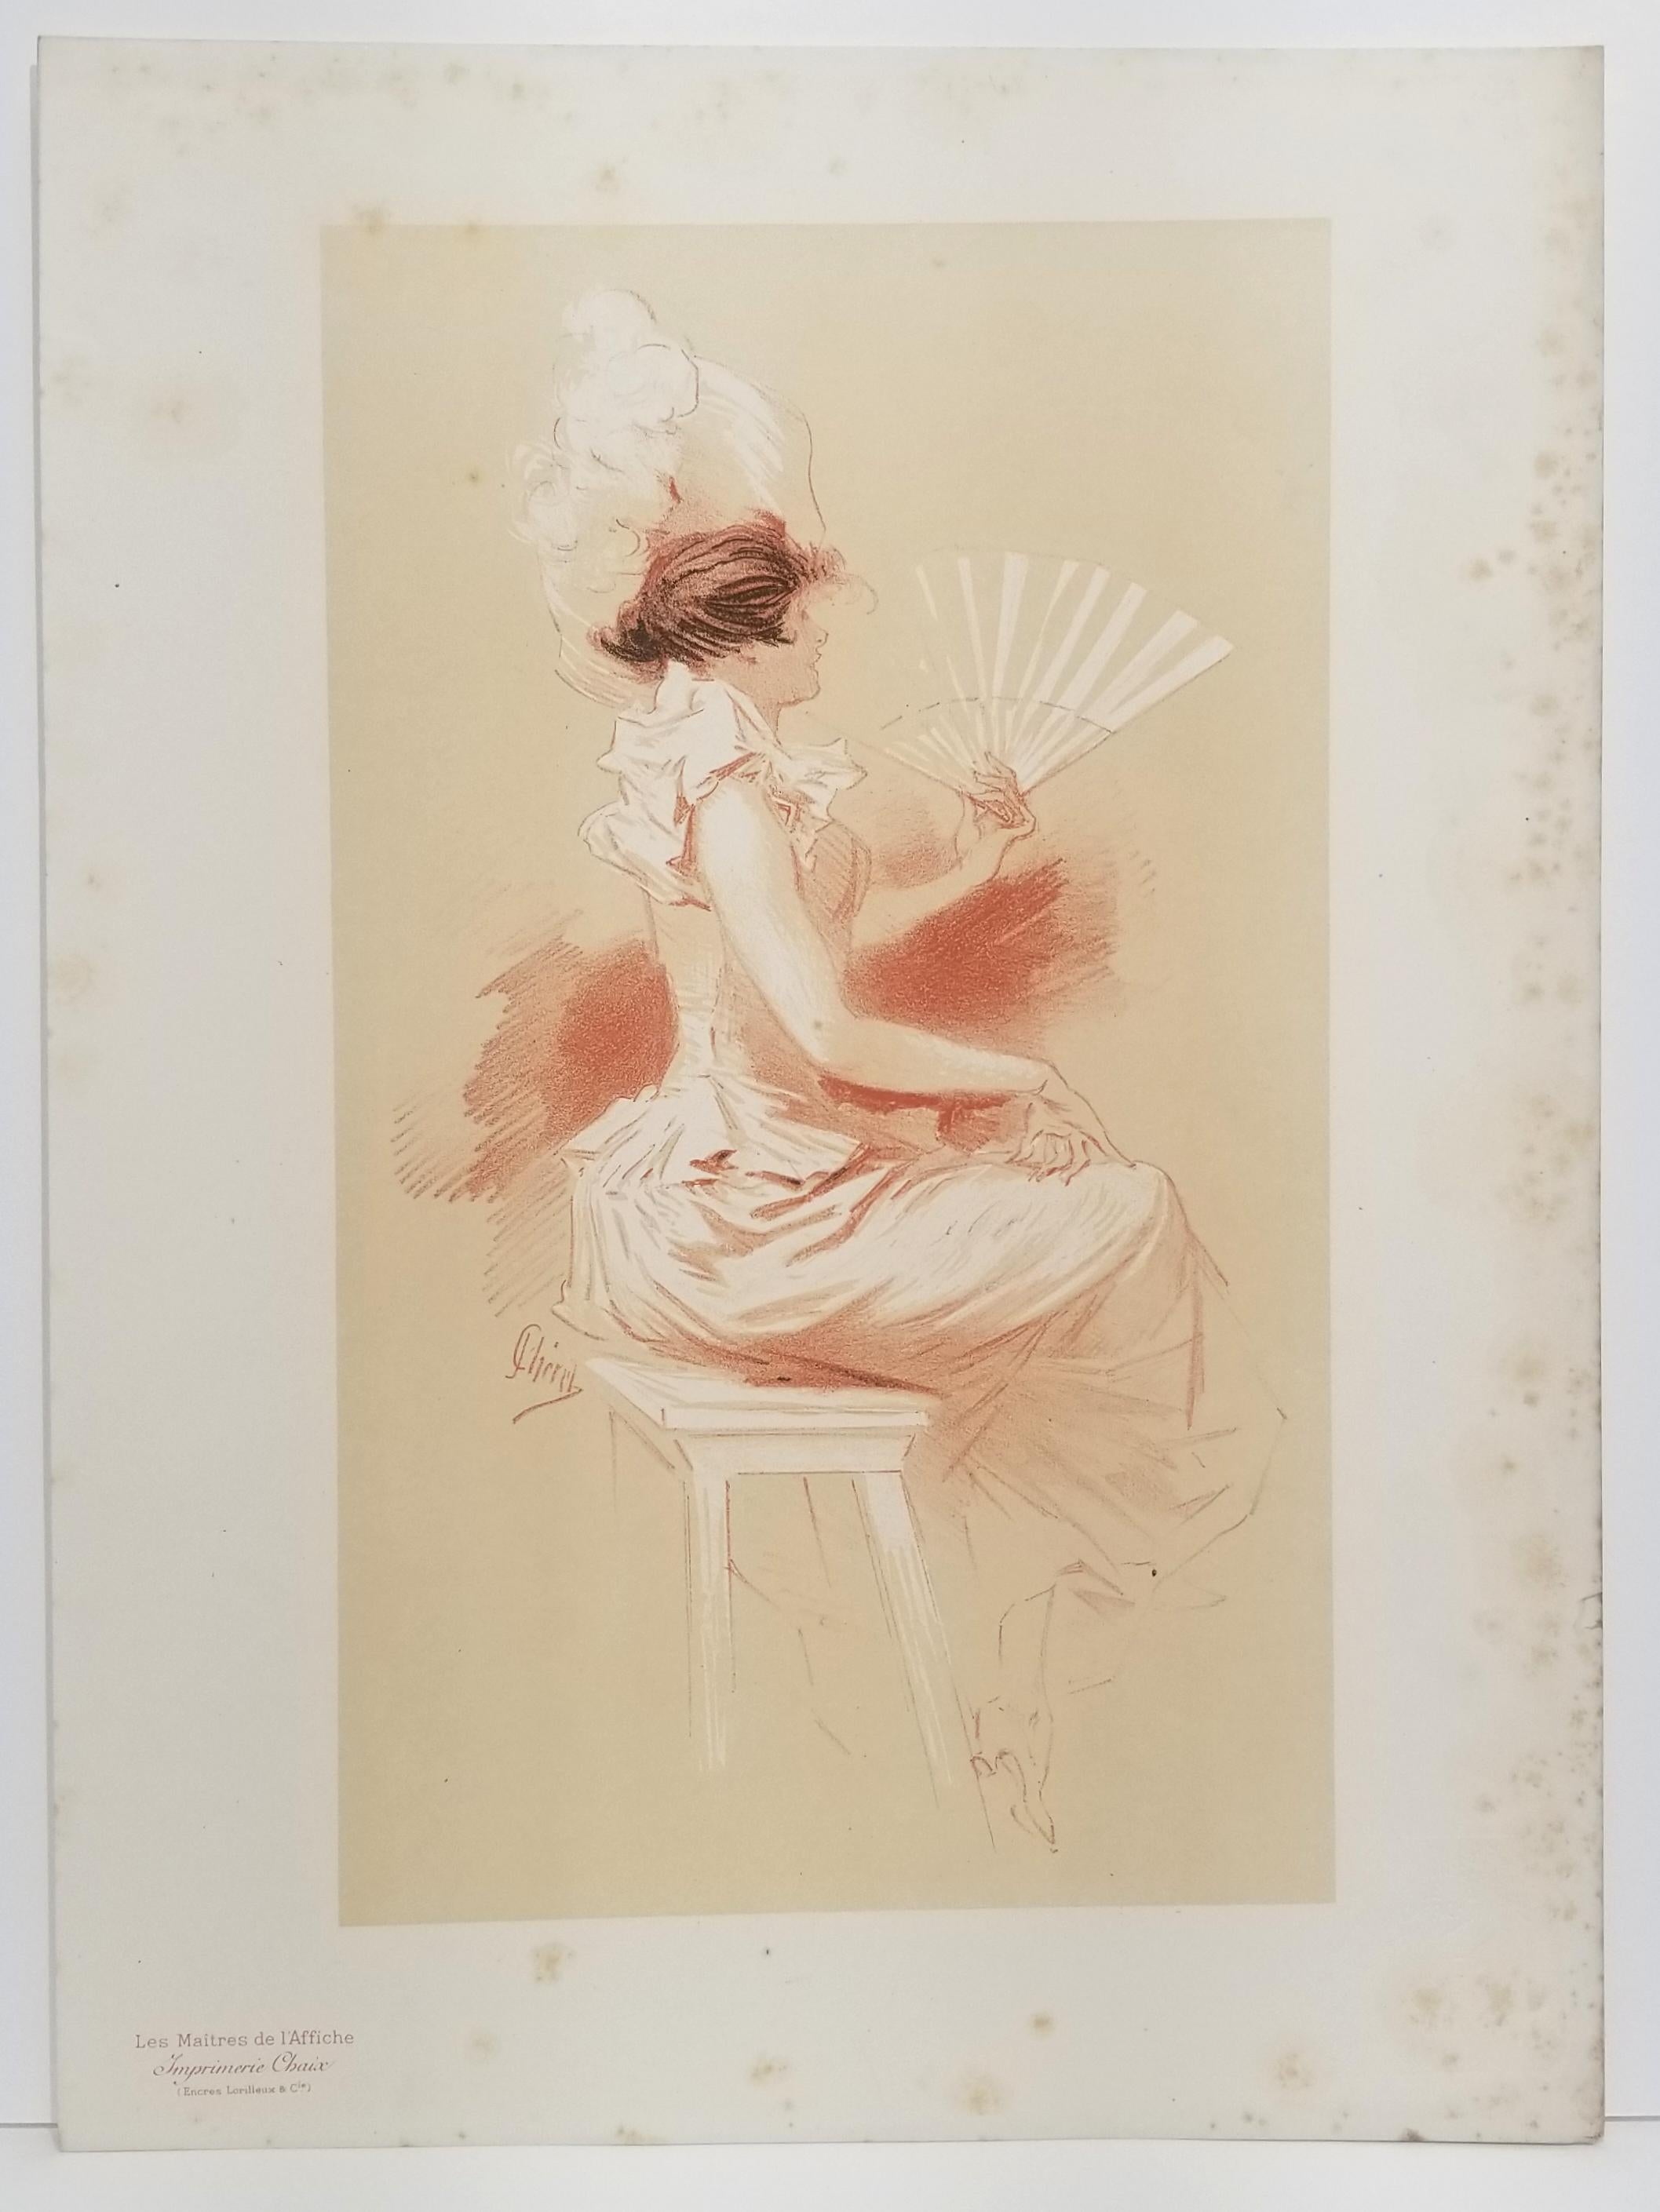 [Femme à l'éventail] - Print by Jules Chéret